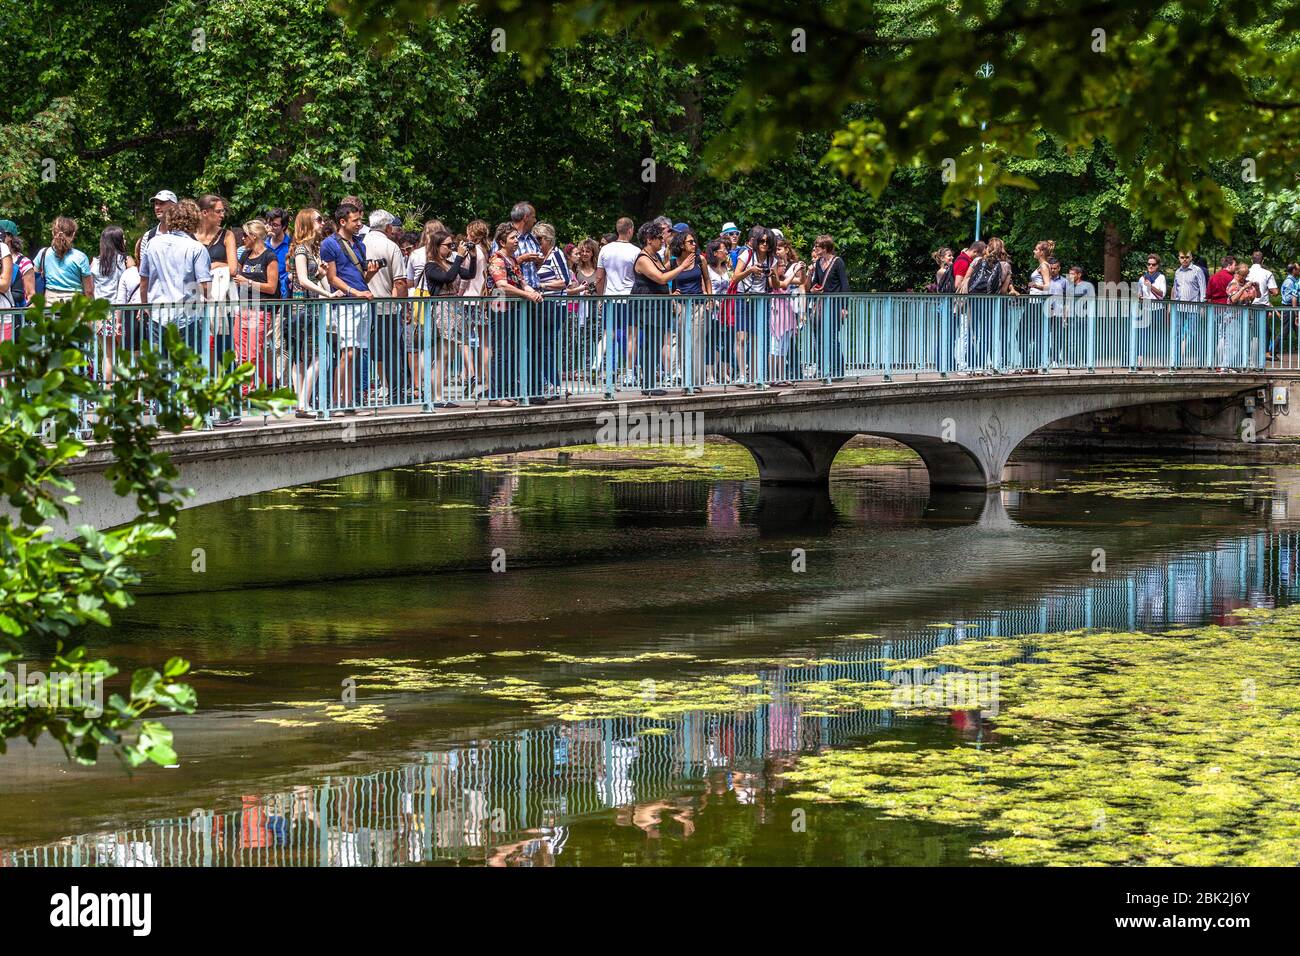 St James Park Fußgängerbrücke überfüllt mit Touristen und Besuchern an einem Sommertag, London, England, Großbritannien. Stockfoto